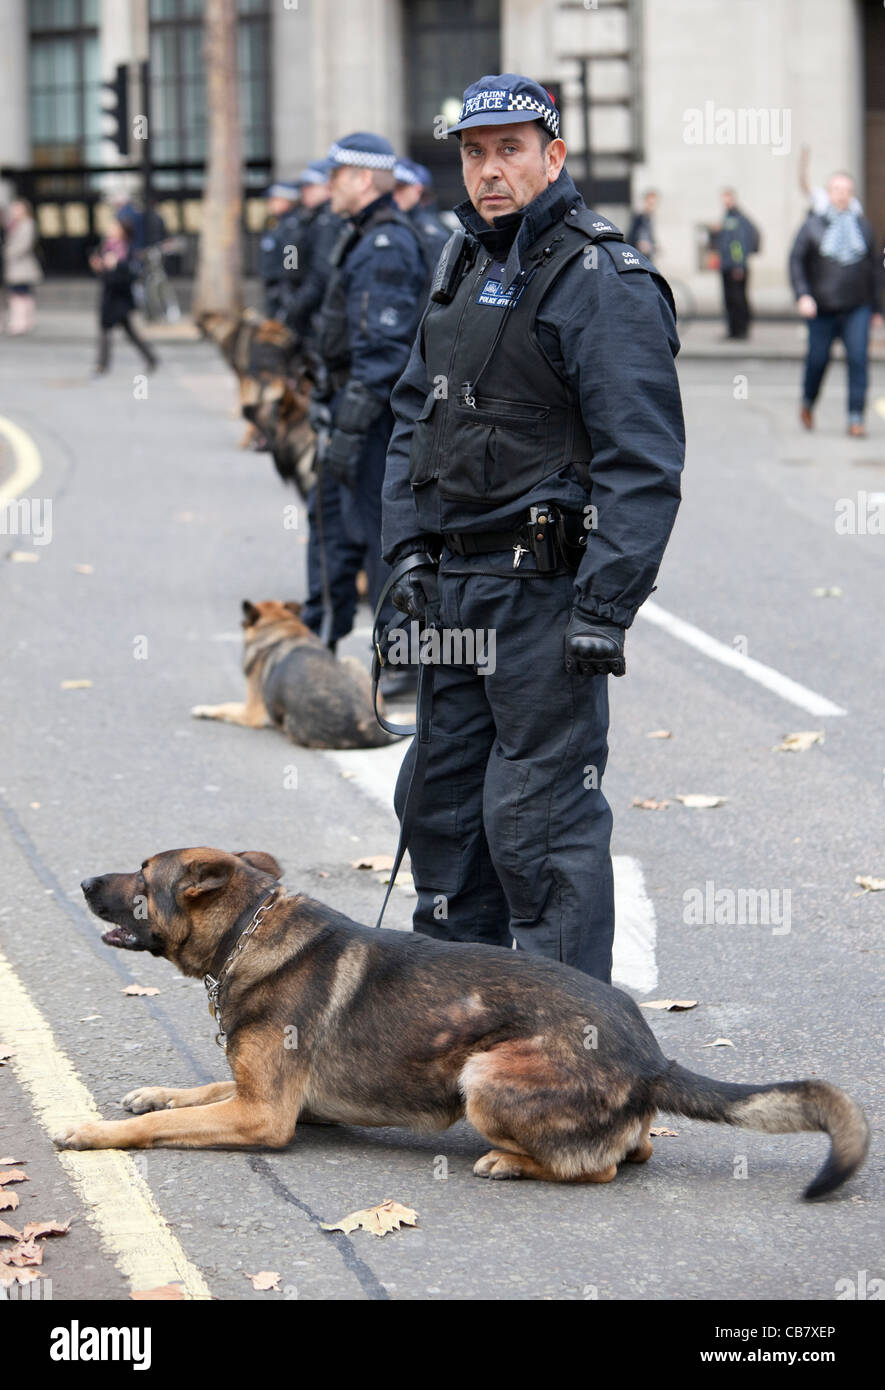 Britische Polizei mit Hunden, beim Streik des öffentlichen Sektors (Gewerkschaften), London, England, 2011, Großbritannien, GB. Stockfoto